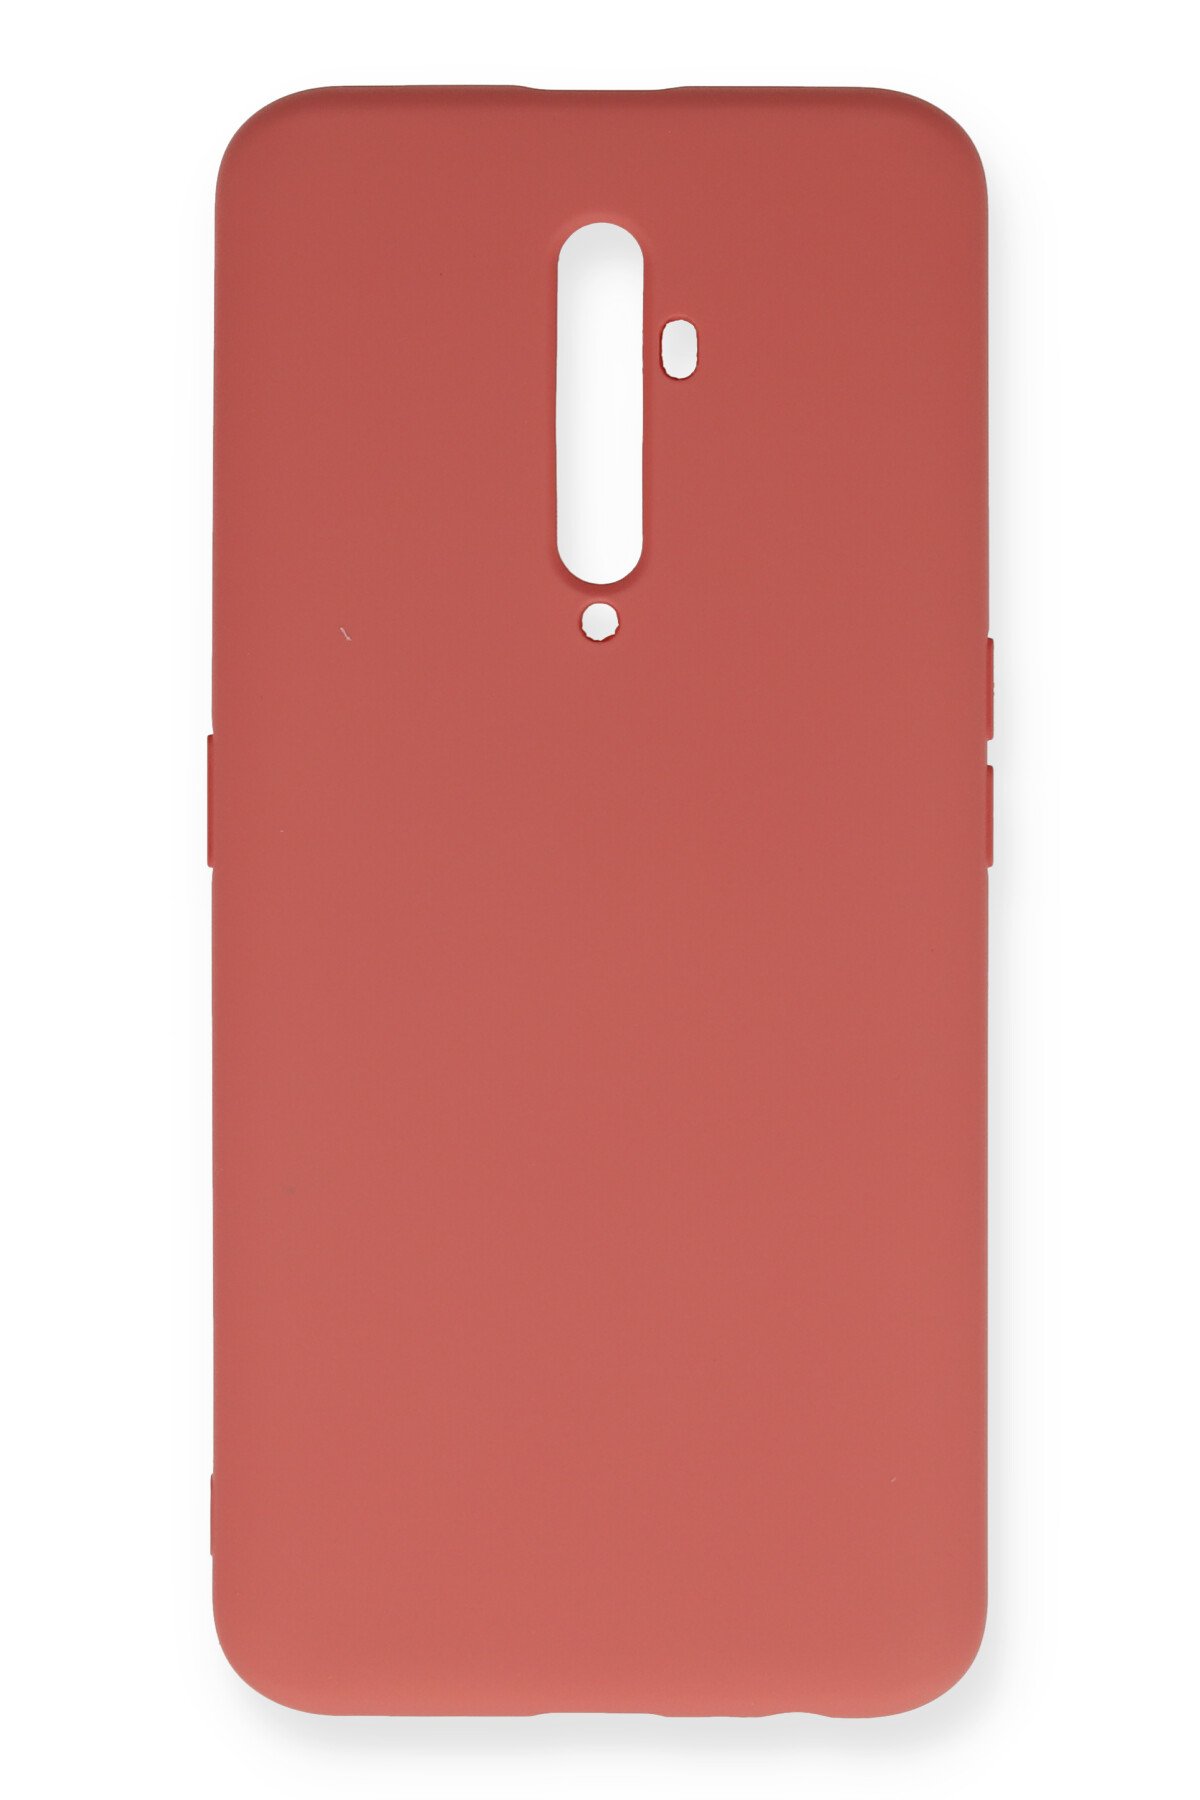 Newface Oppo Reno 2Z Kılıf Trend S Plus Kapaklı Kılıf - Kırmızı